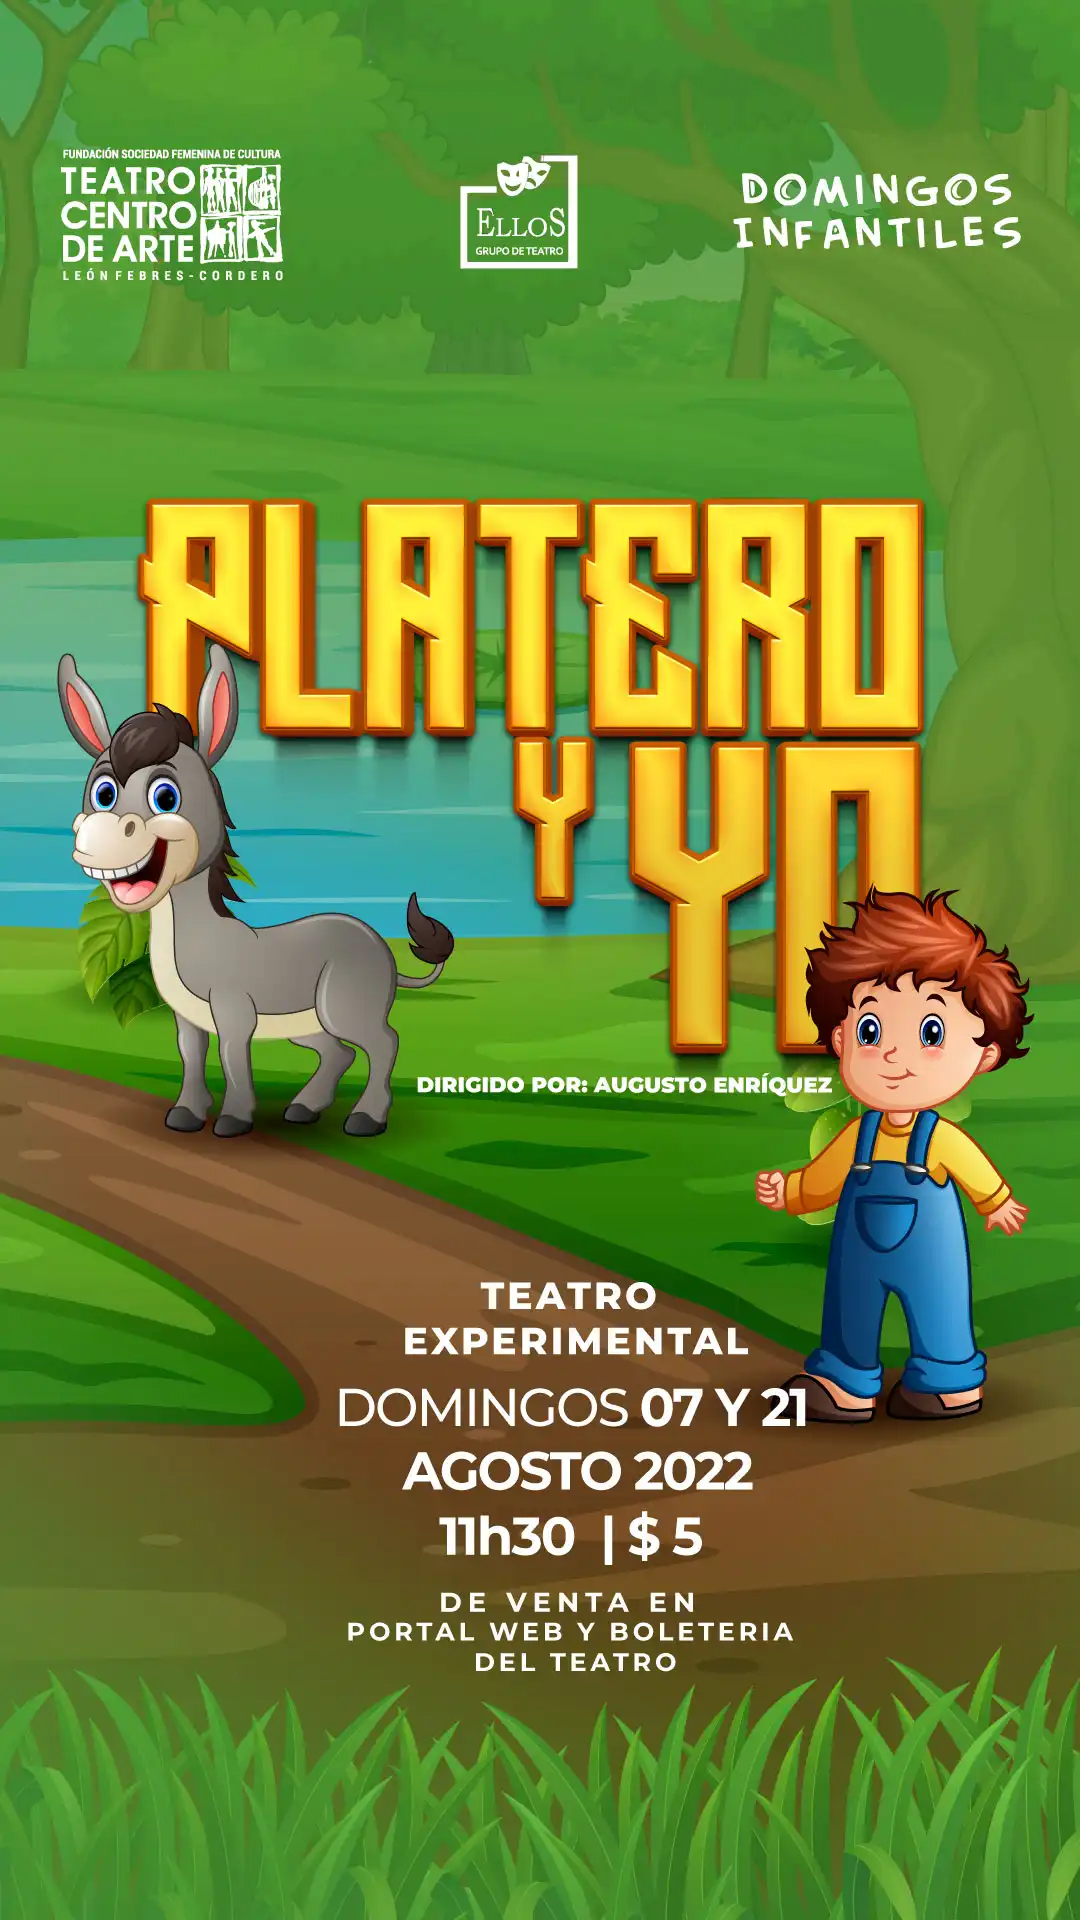 platero-yo